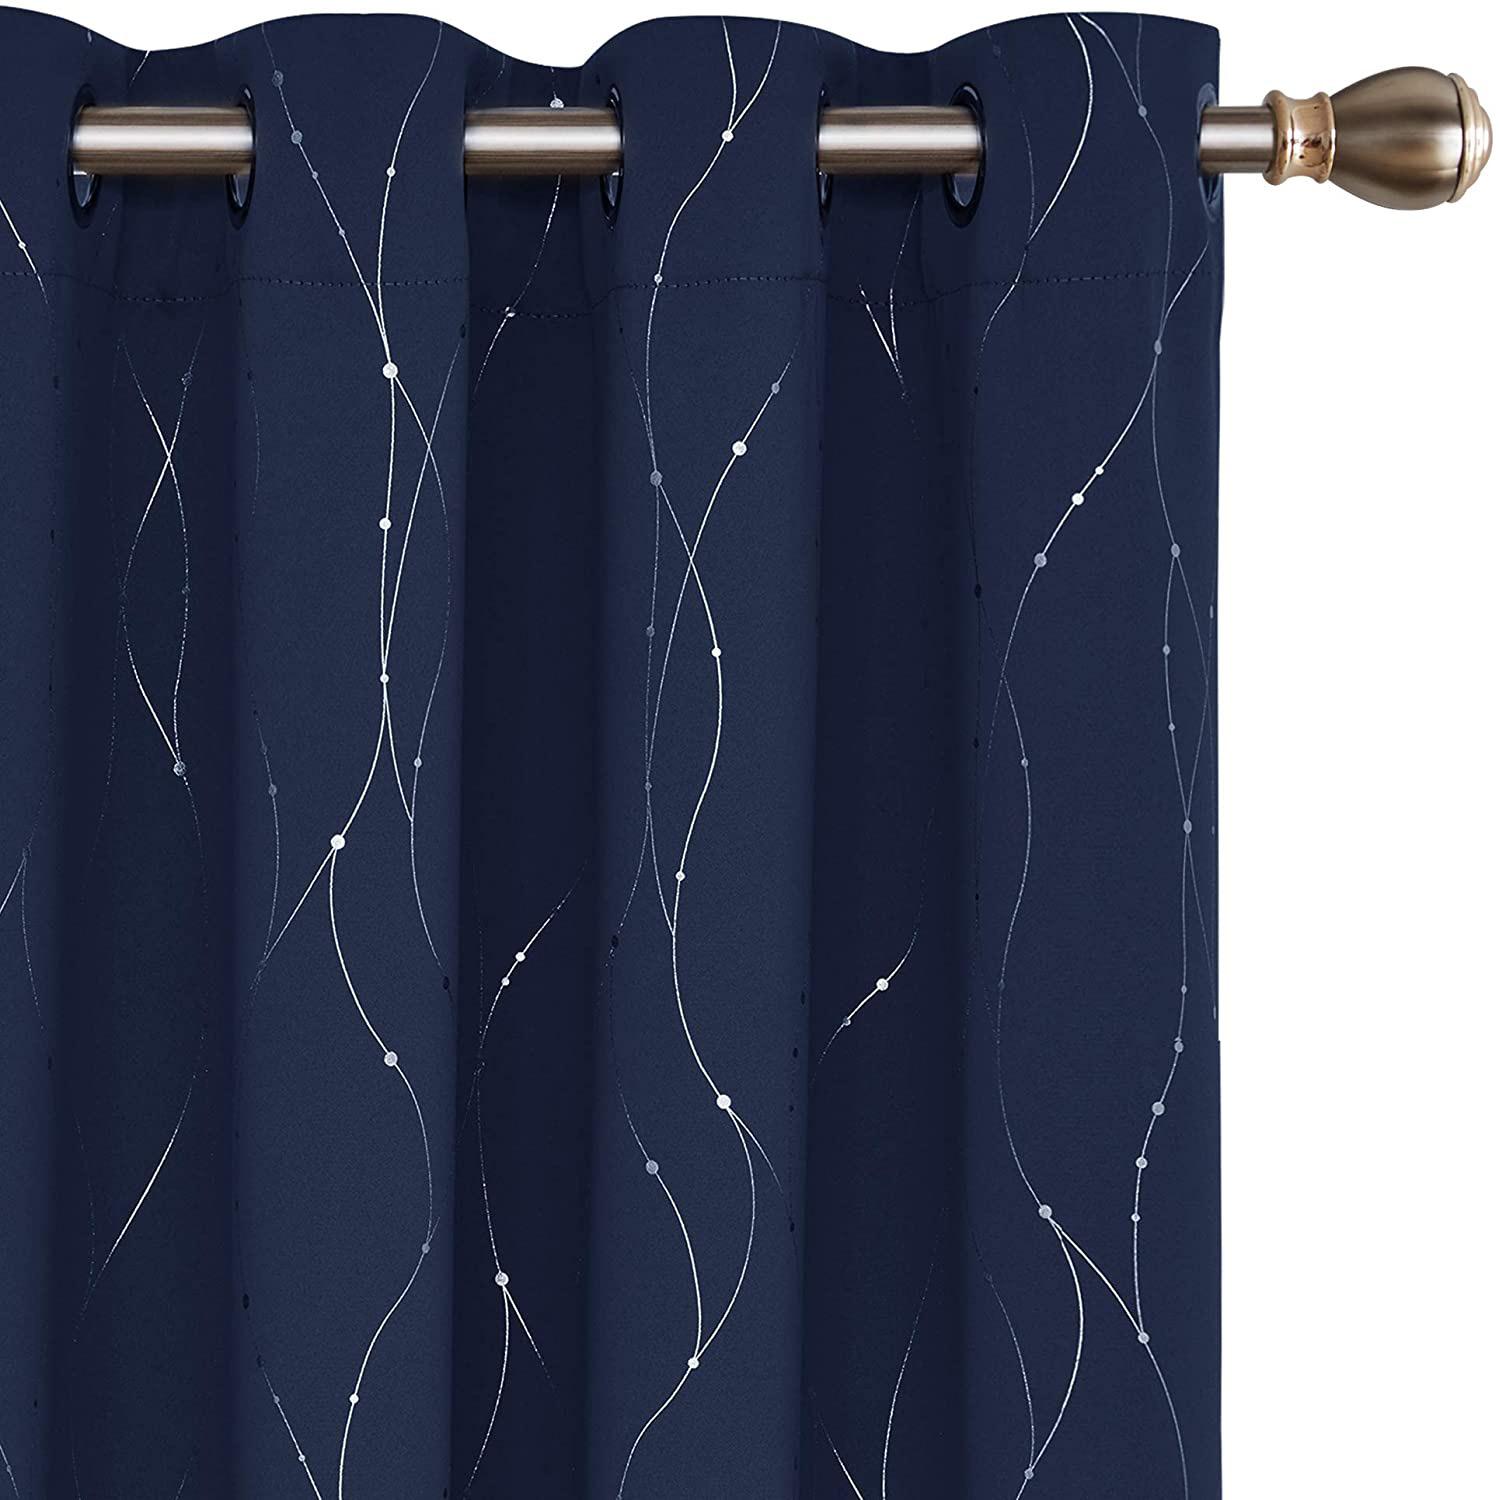 Deconovo Blackout Curtains Grommet Top Drapes for $23.79